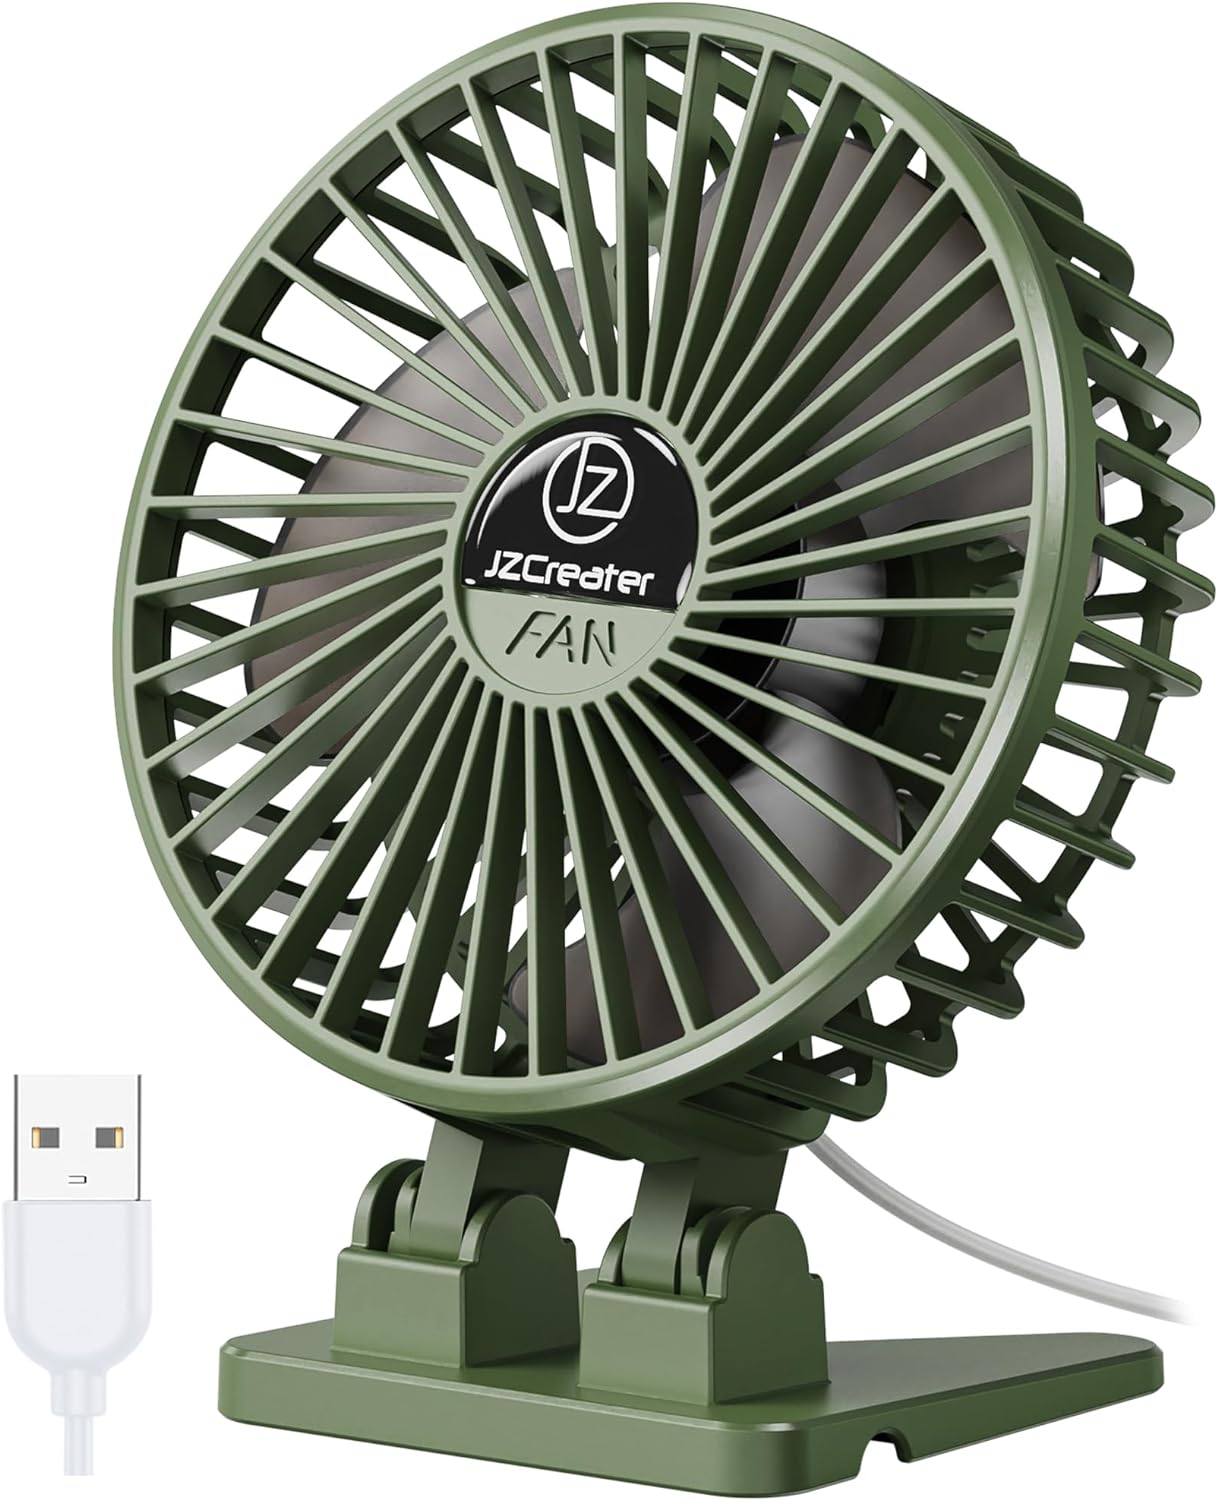 JZCreater USB Desk Fan, Mini Fan Portable, 3 Speeds Desktop Table Cooling Fan, Plug in Power Fan, Rotation Strong Wind, Quiet Personal Small Fan for Home Desktop Office Travel Bedroom, Army Green